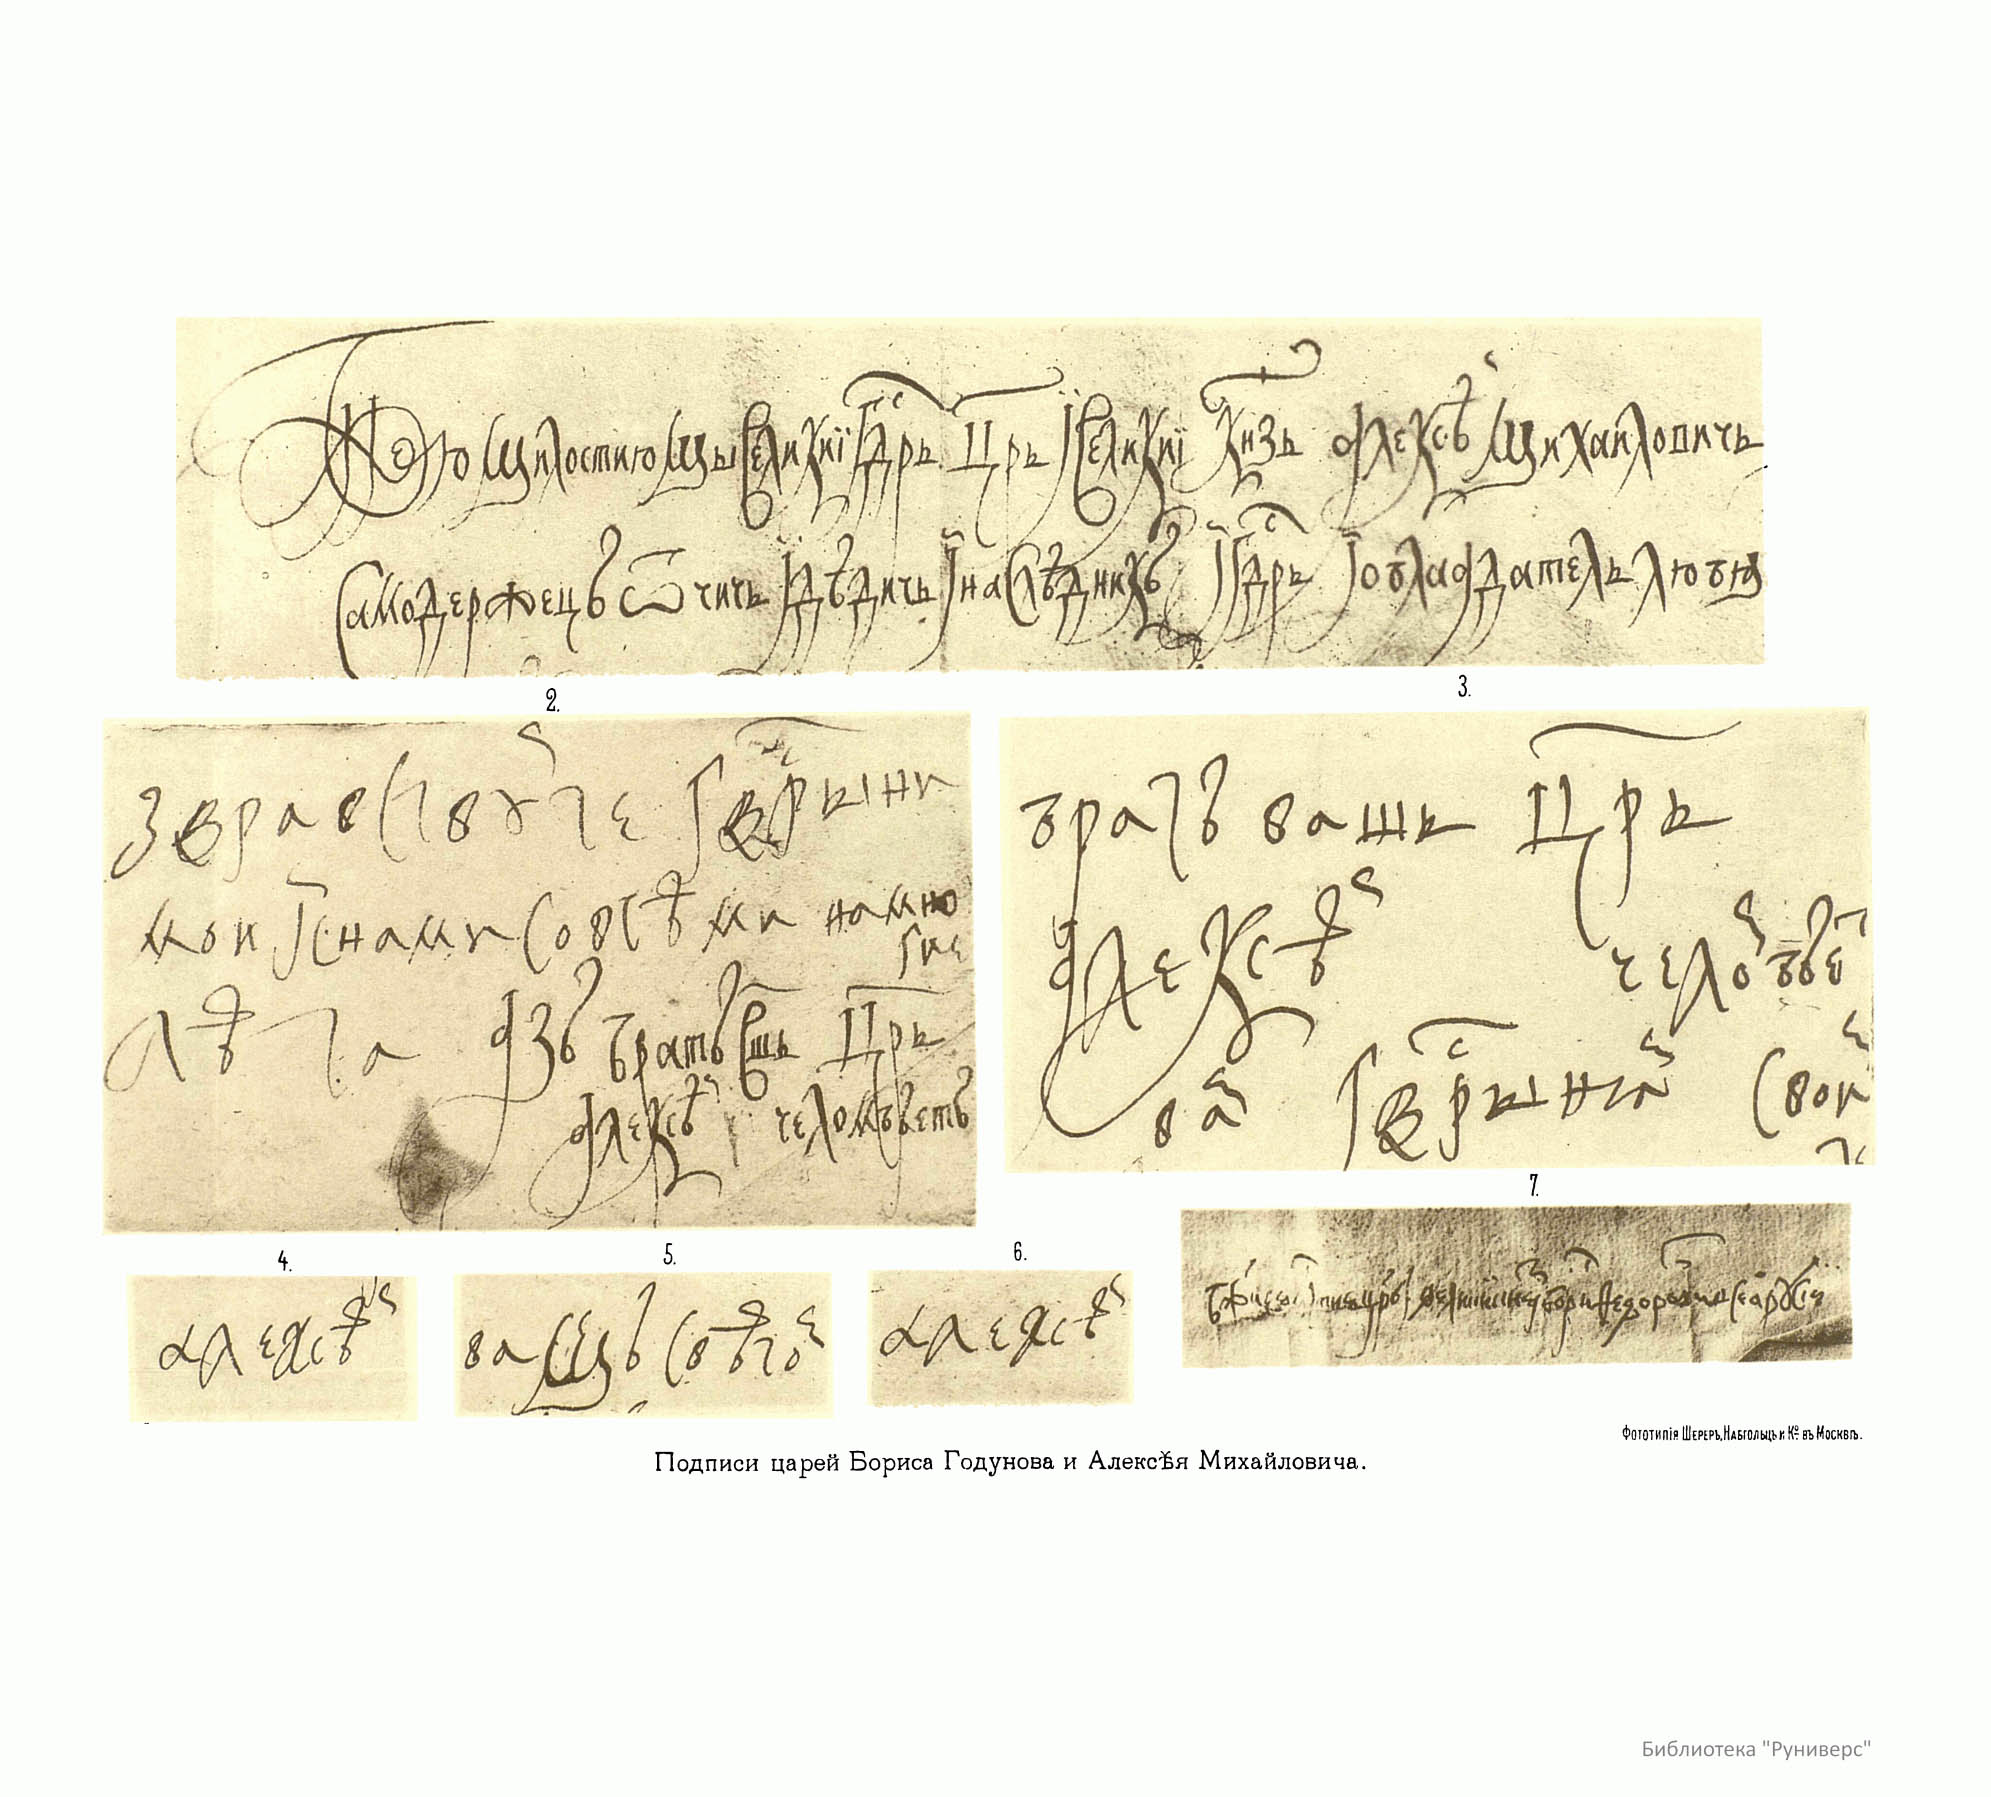 Образцы почерка царя Бориса Годунова и царя Алексея Михайловича